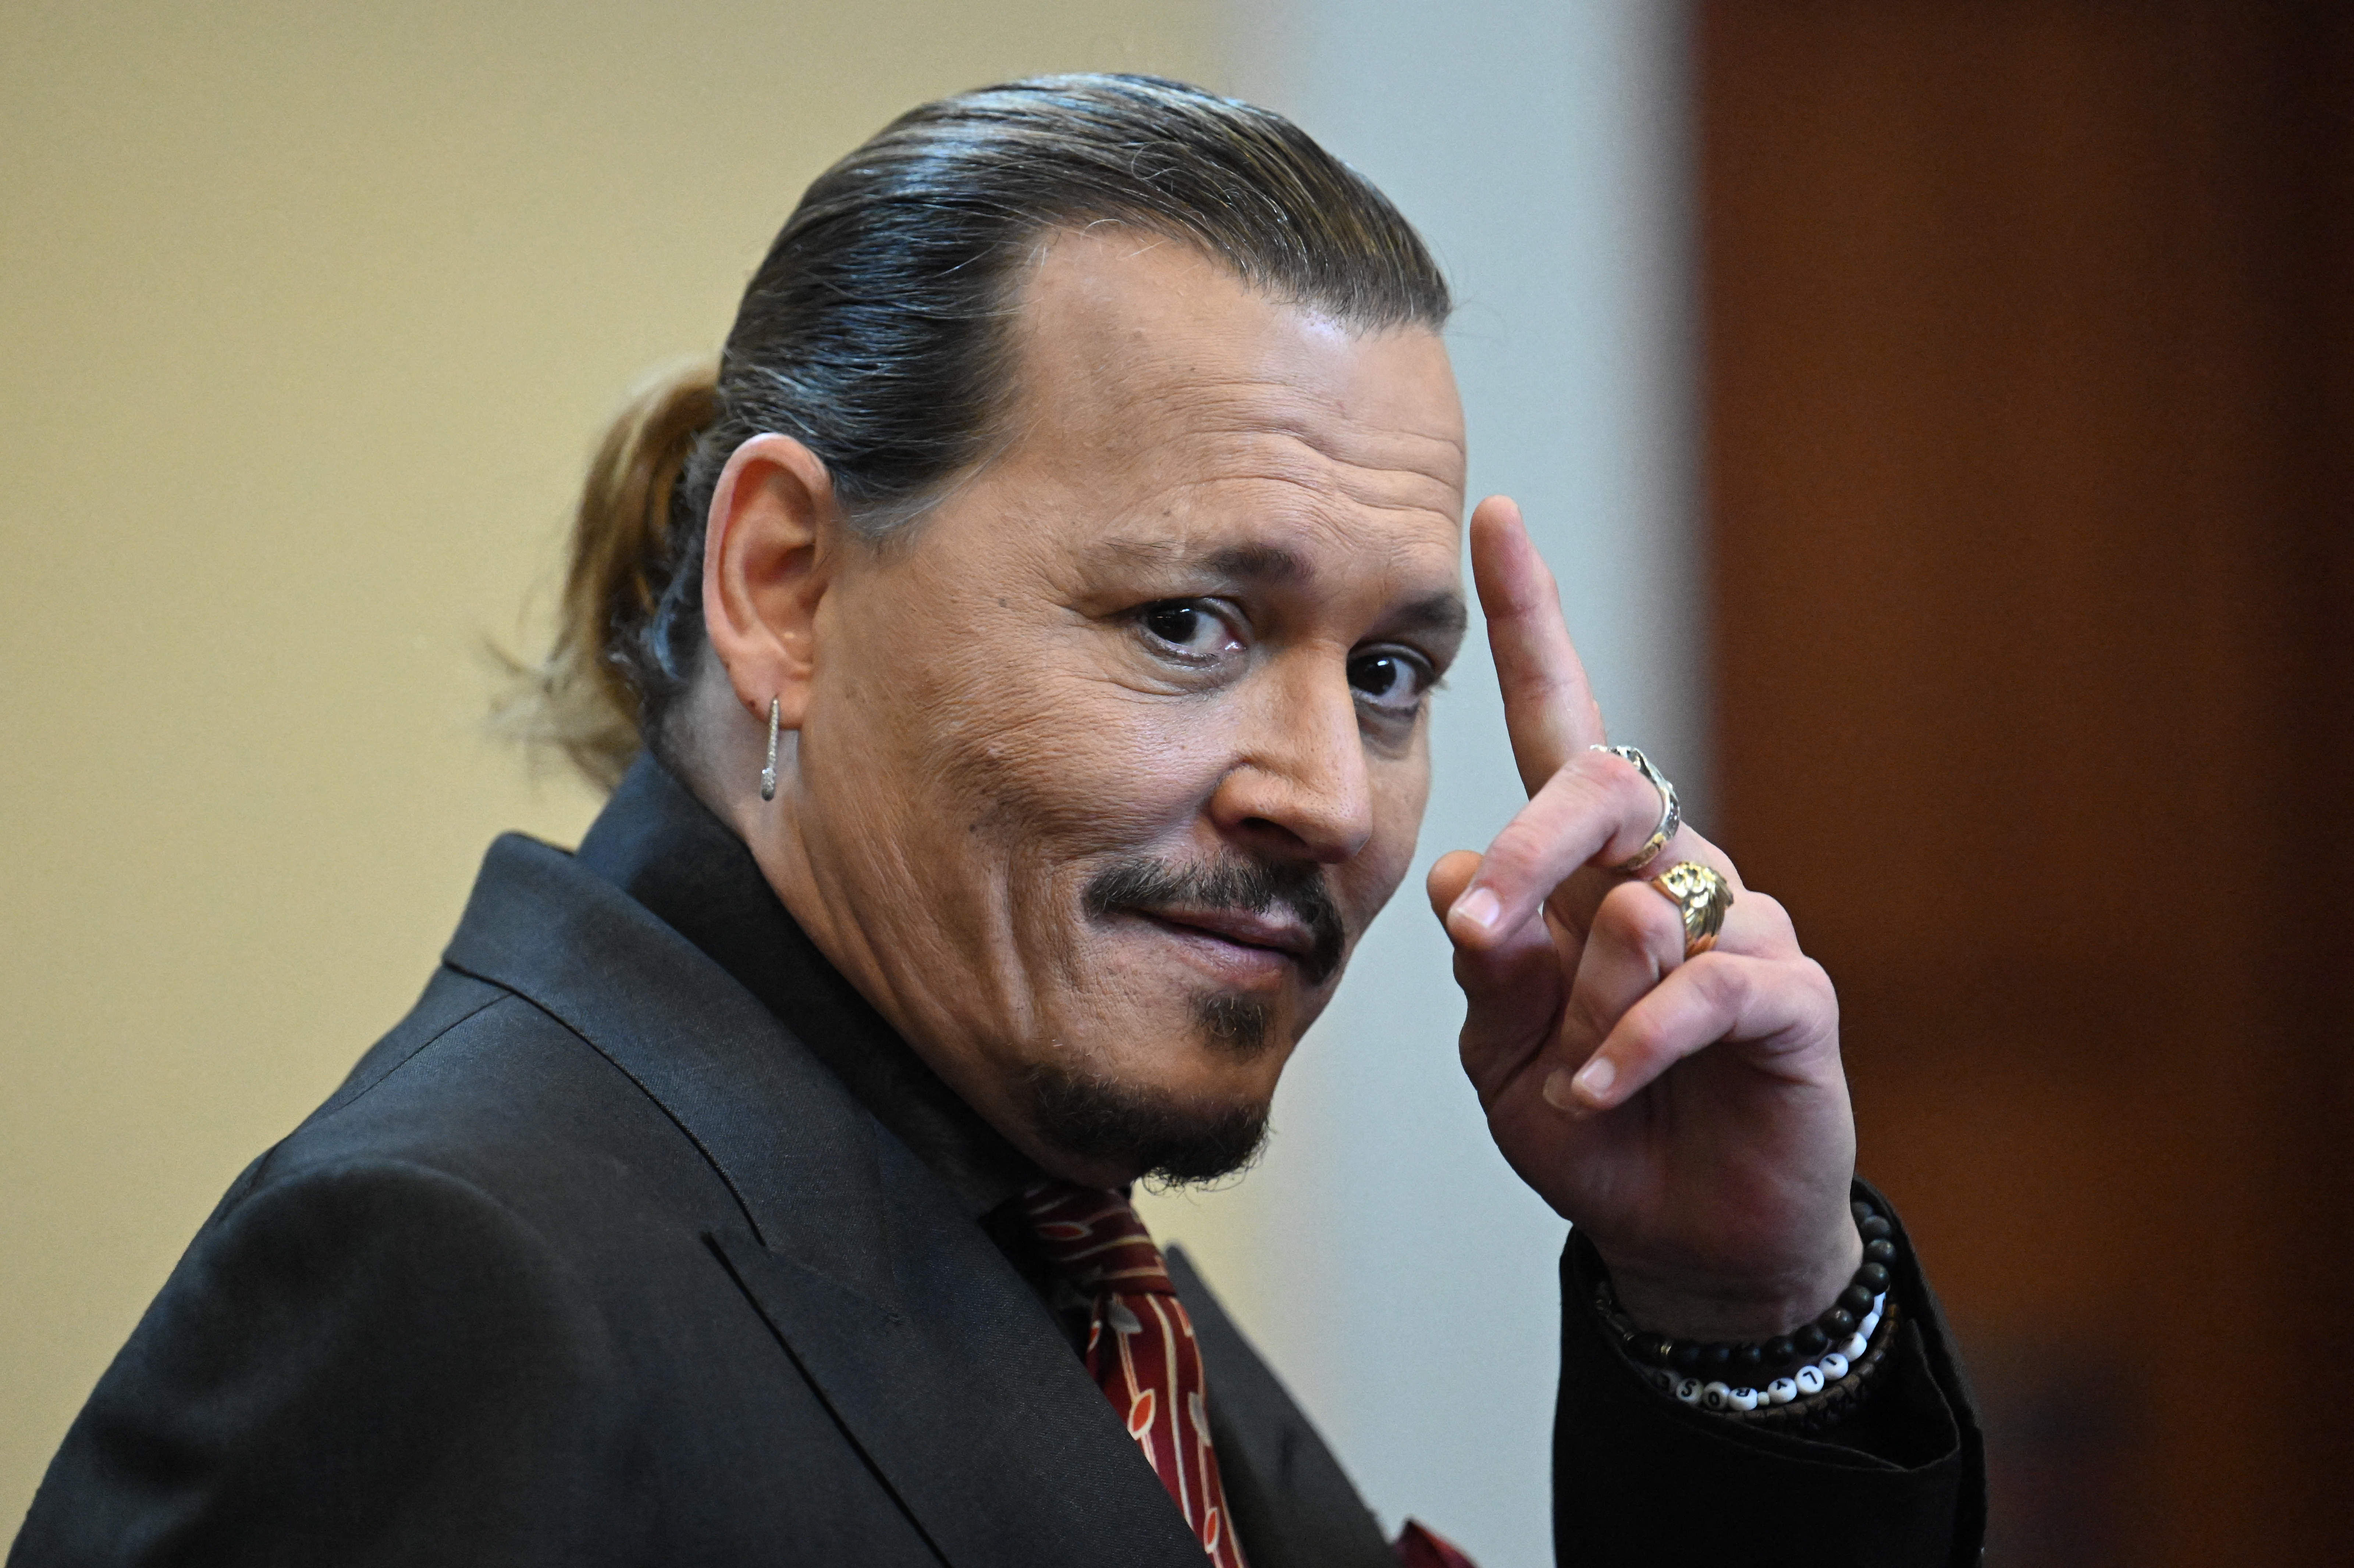 “El jurado me devolvió la vida”, expresó Johnny Depp tras ganar el juicio contra Amber Heard